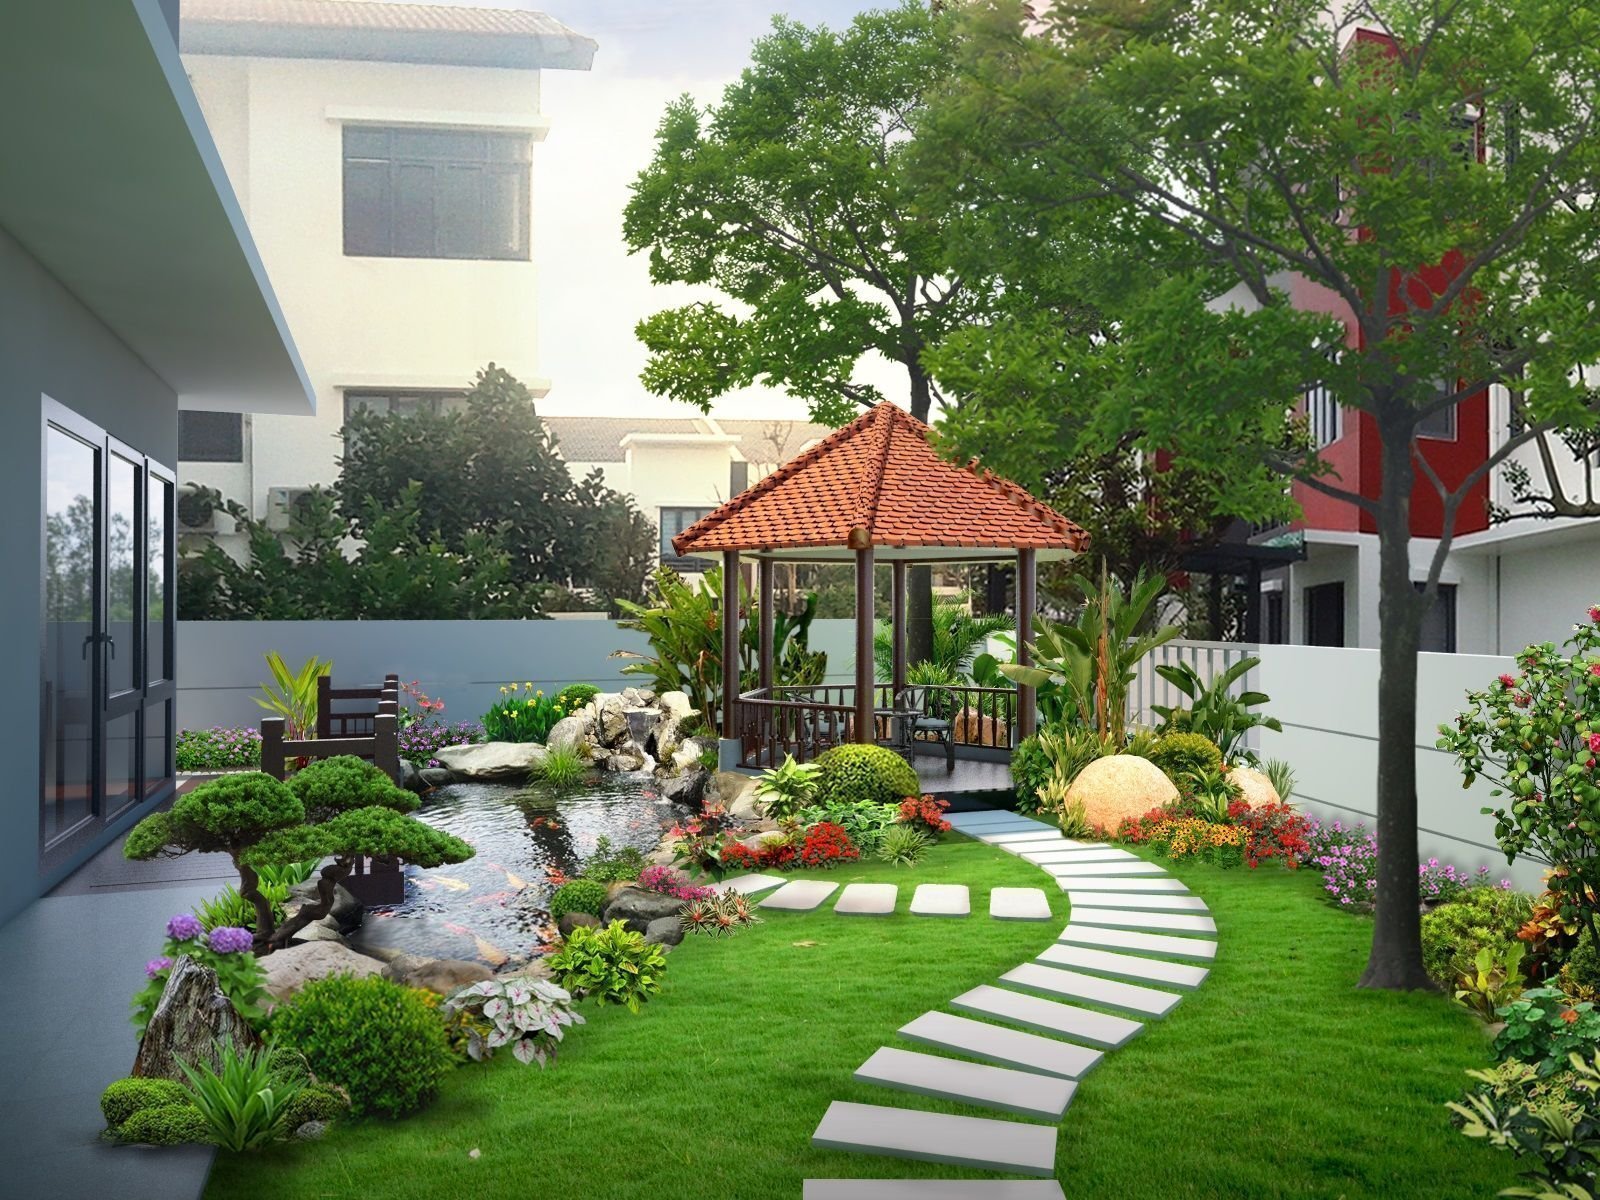 Thiết kế sân vườn nhà quê với 25+ mẫu đẹp, đơn giản